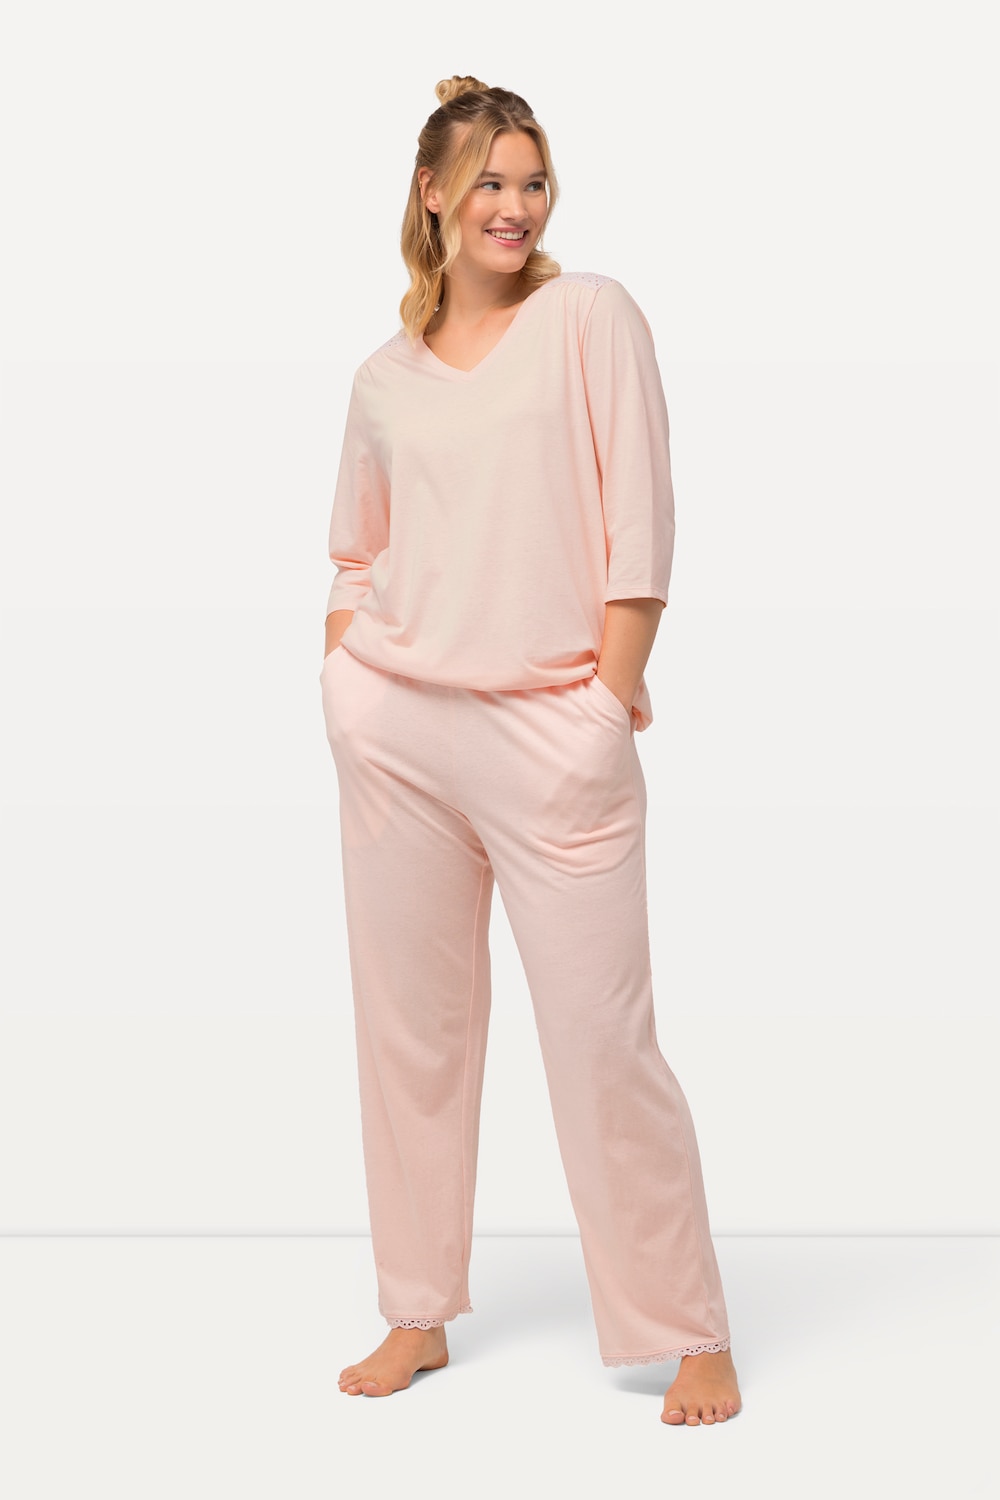 Grote Maten Pyjama, Dames, roze, Maat: 66/68, Katoen, Ulla Popken